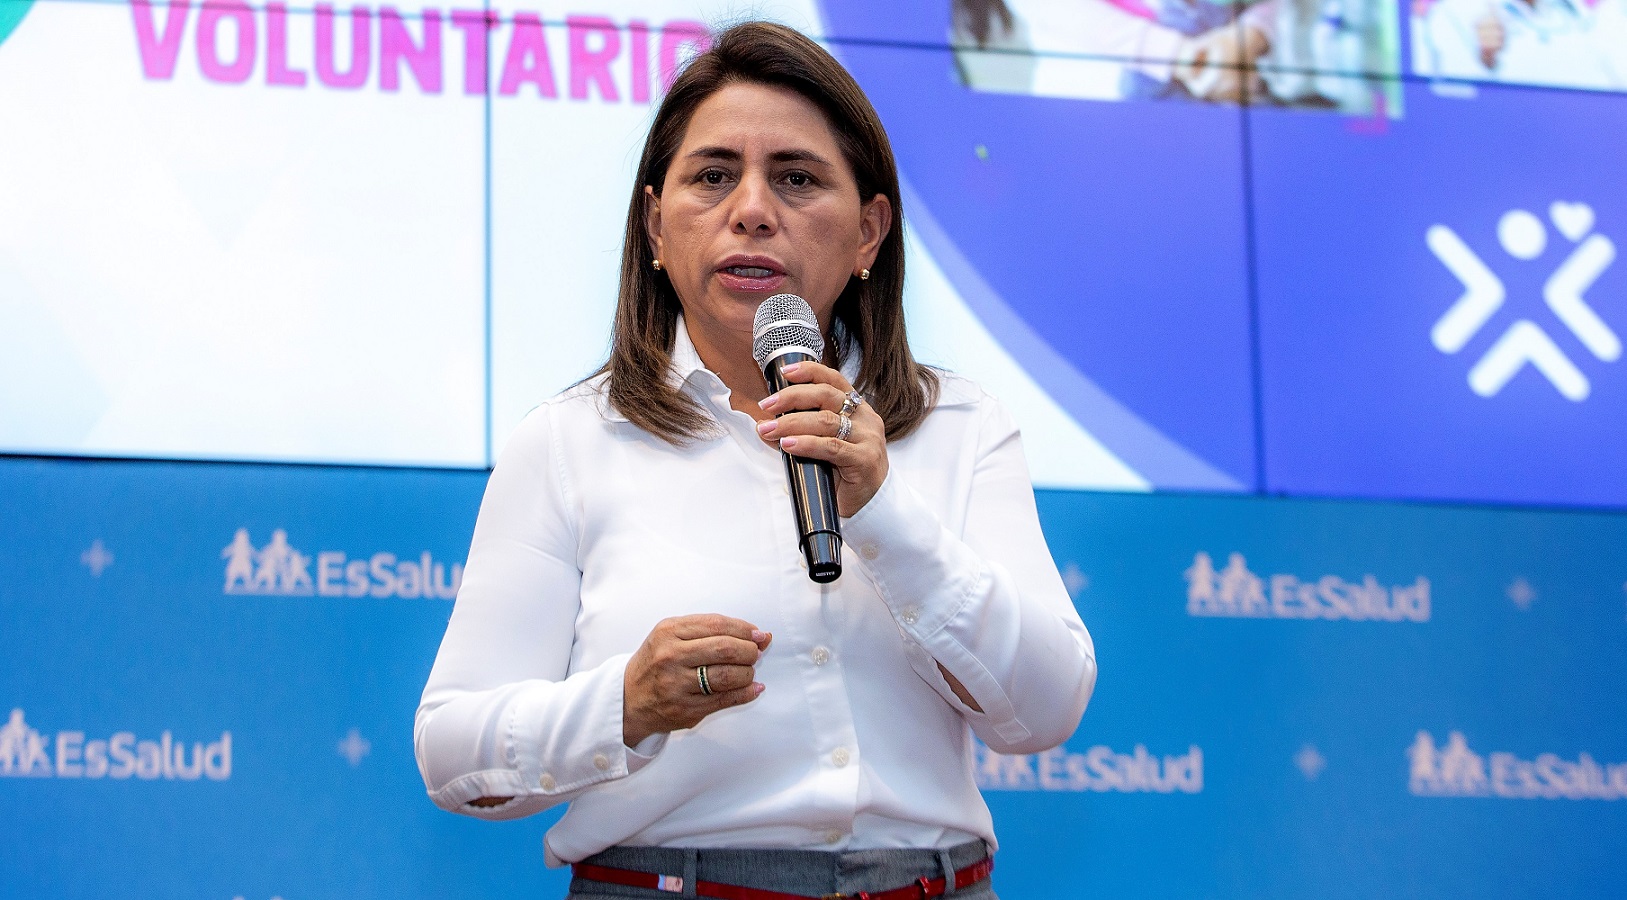 Expresidenta de EsSalud, Rosa Gutierrez Palomino, "Realmente estoy muy indignada por la forma como ha procedido este gobierno".